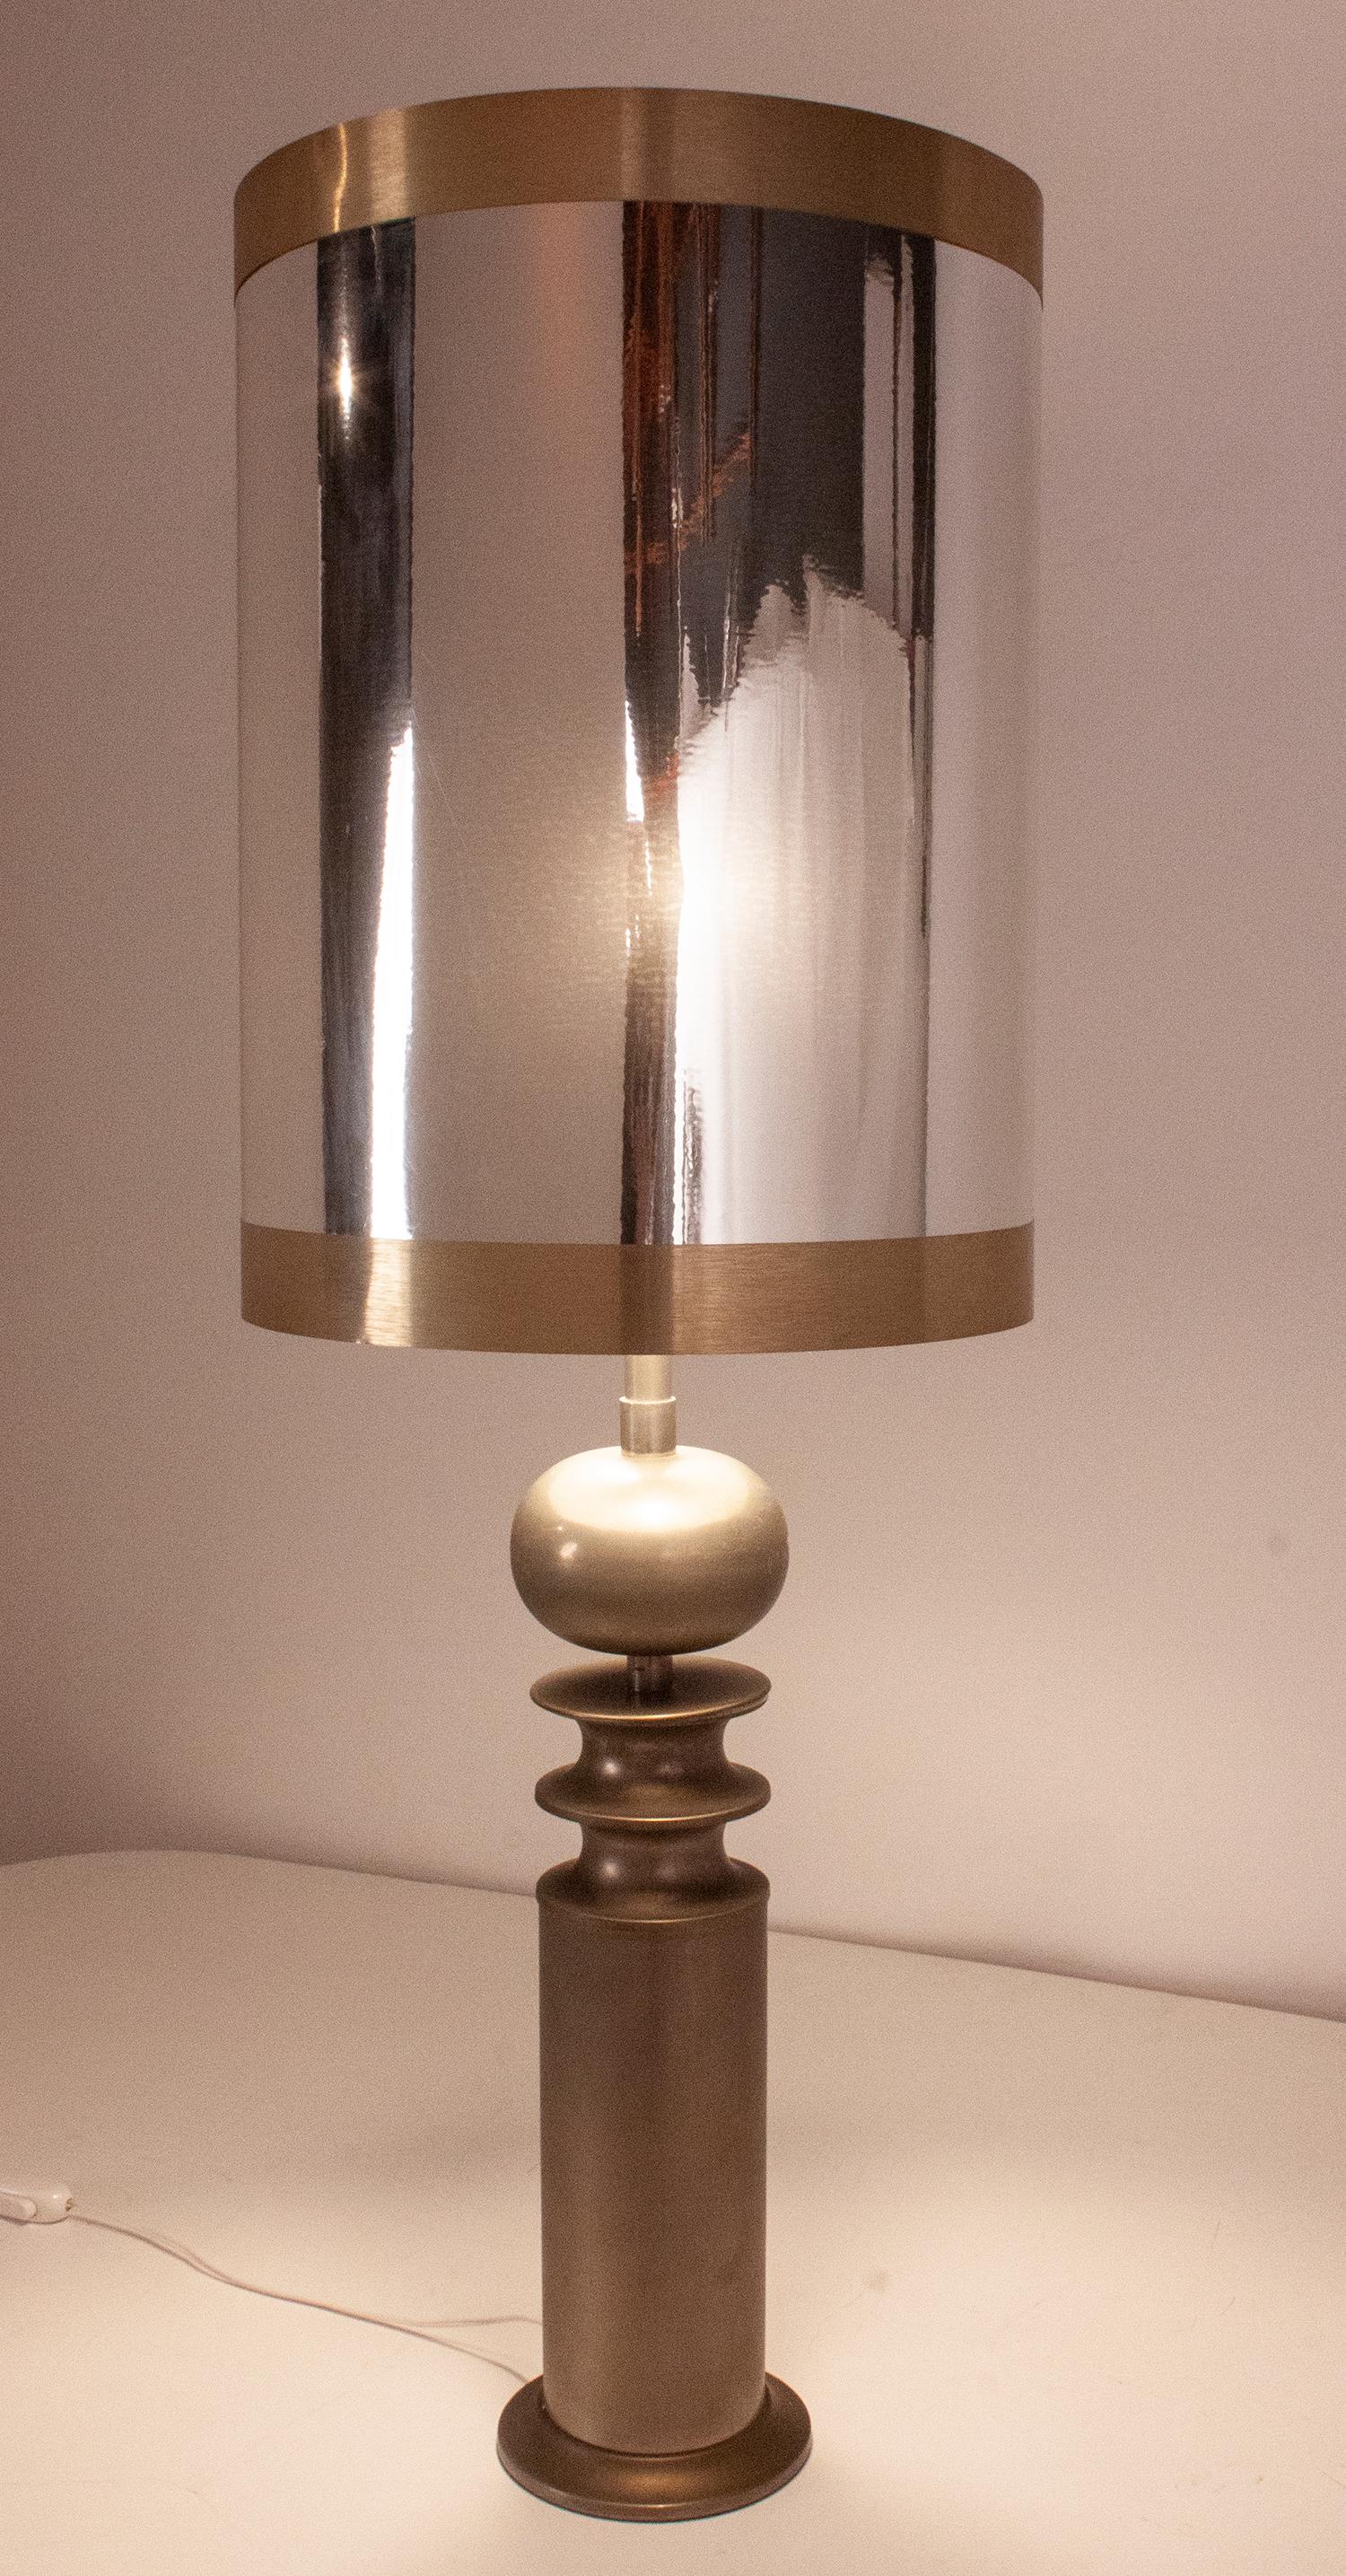 Grande lampe de table en métal, Espagne années 1970.
Nouvelle teinte (comme l'originale) avec son support d'origine. La lampe a trois ampoules
Prise européenne.